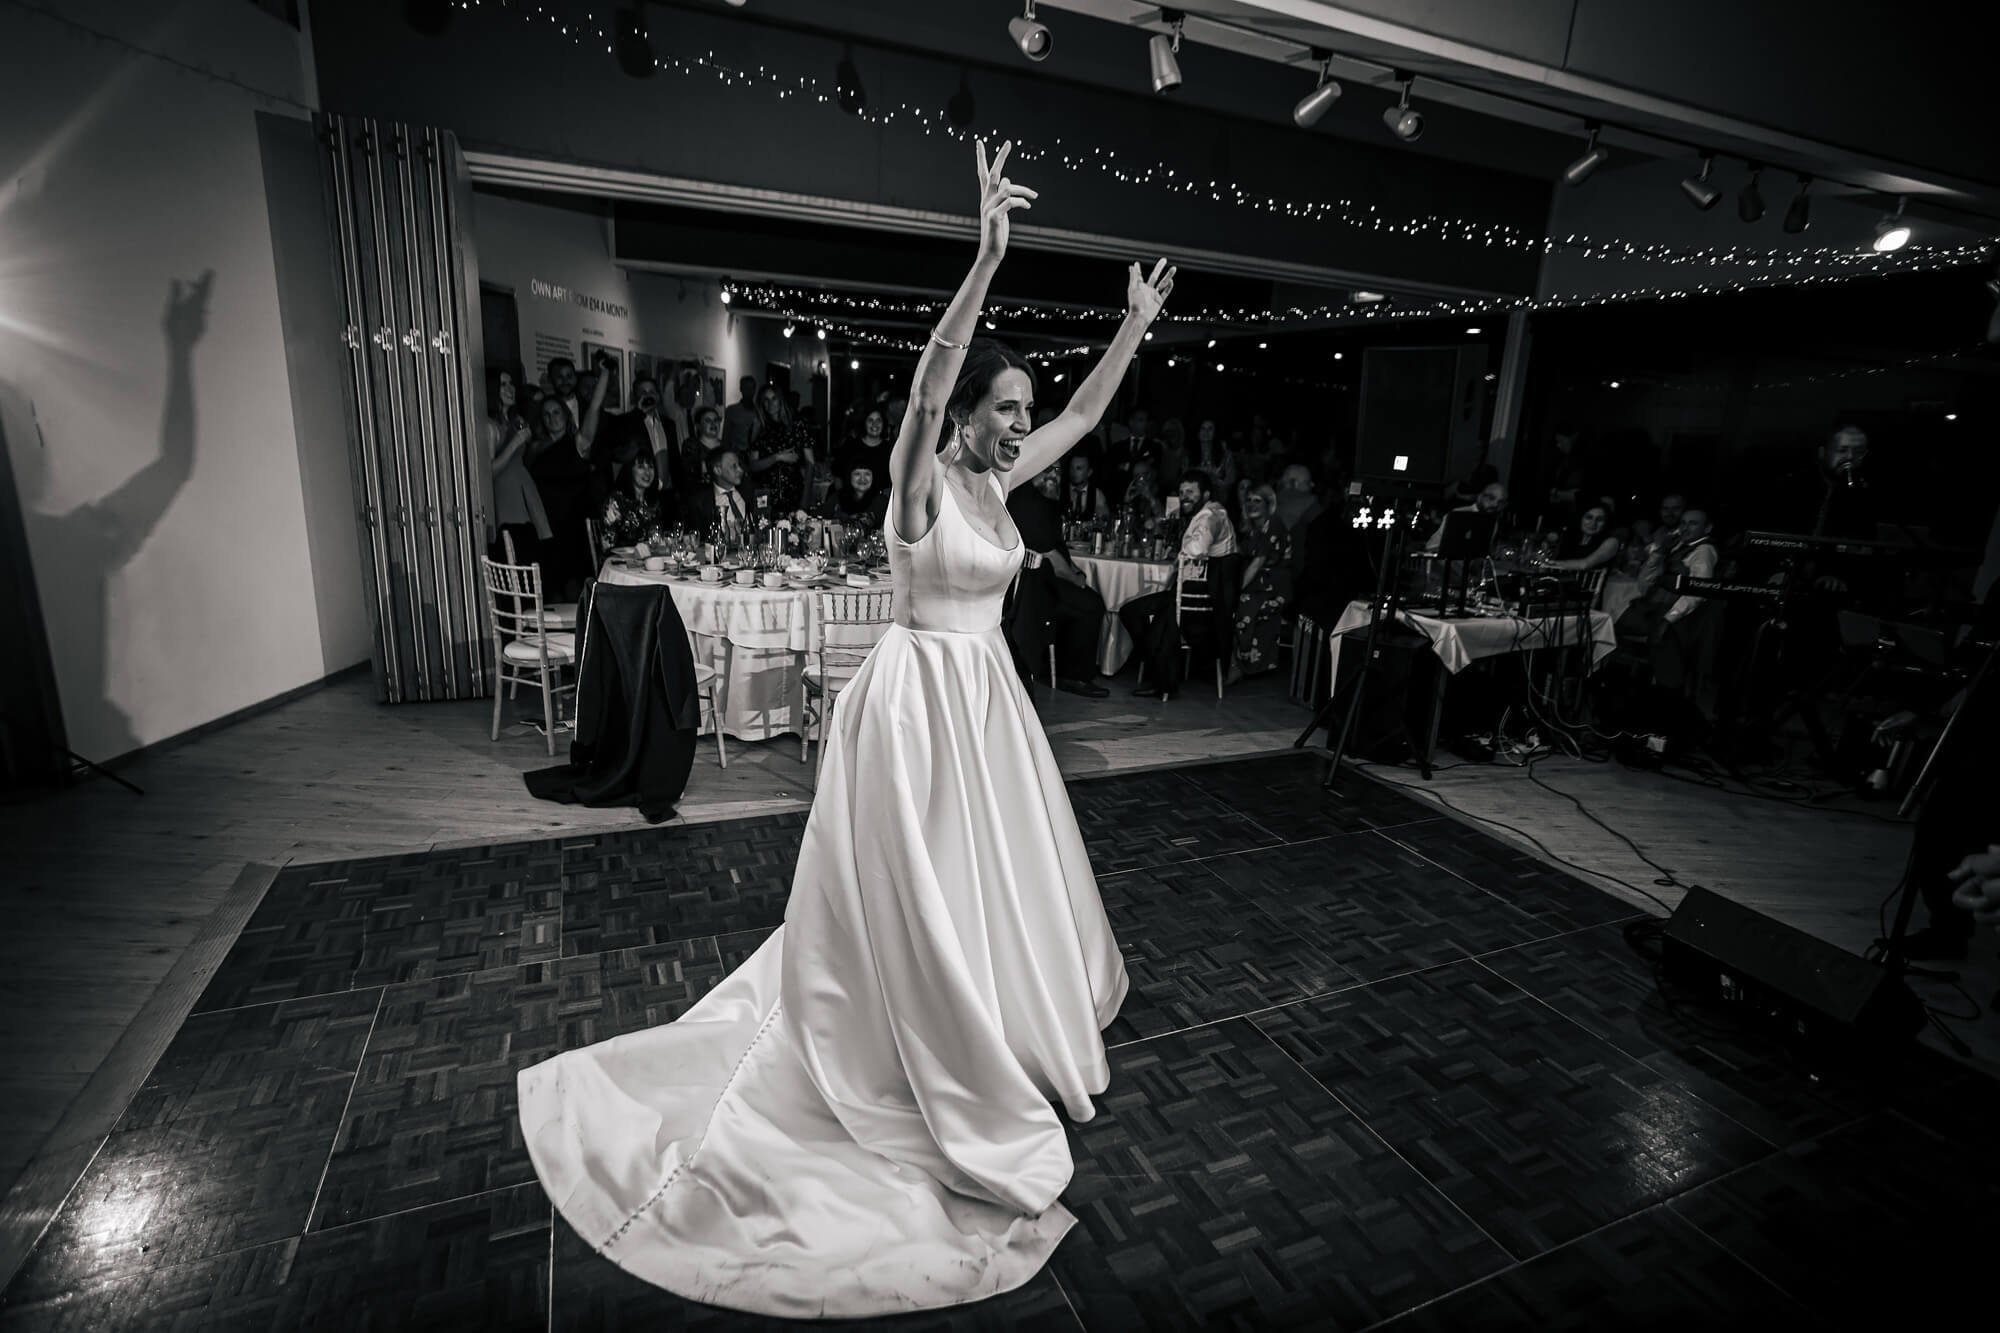 Bride on the dance floor at her wedding